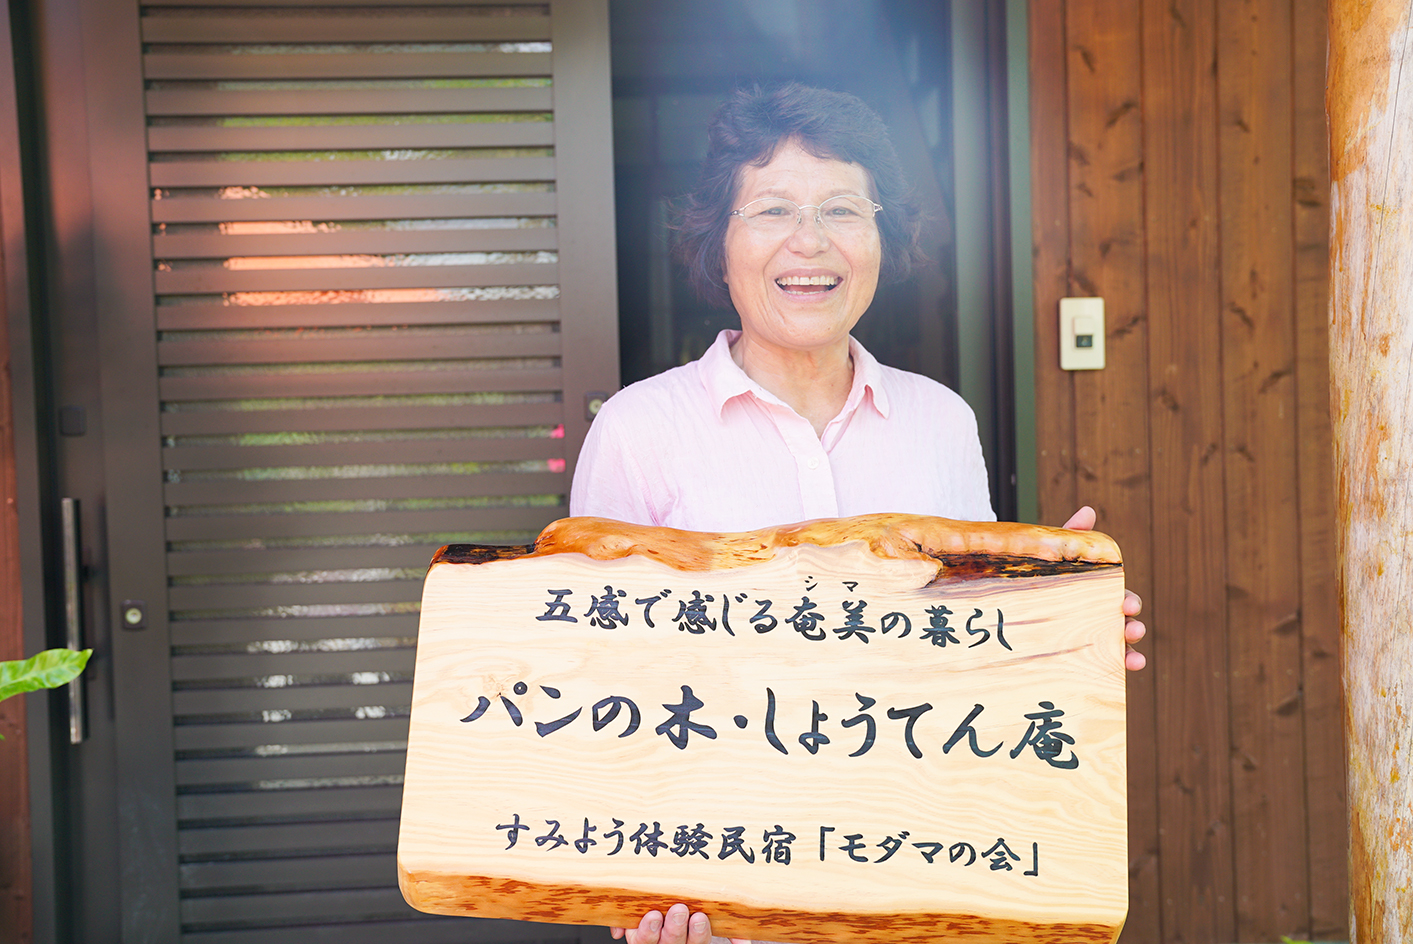 奄美の民宿を営む笑顔の女性